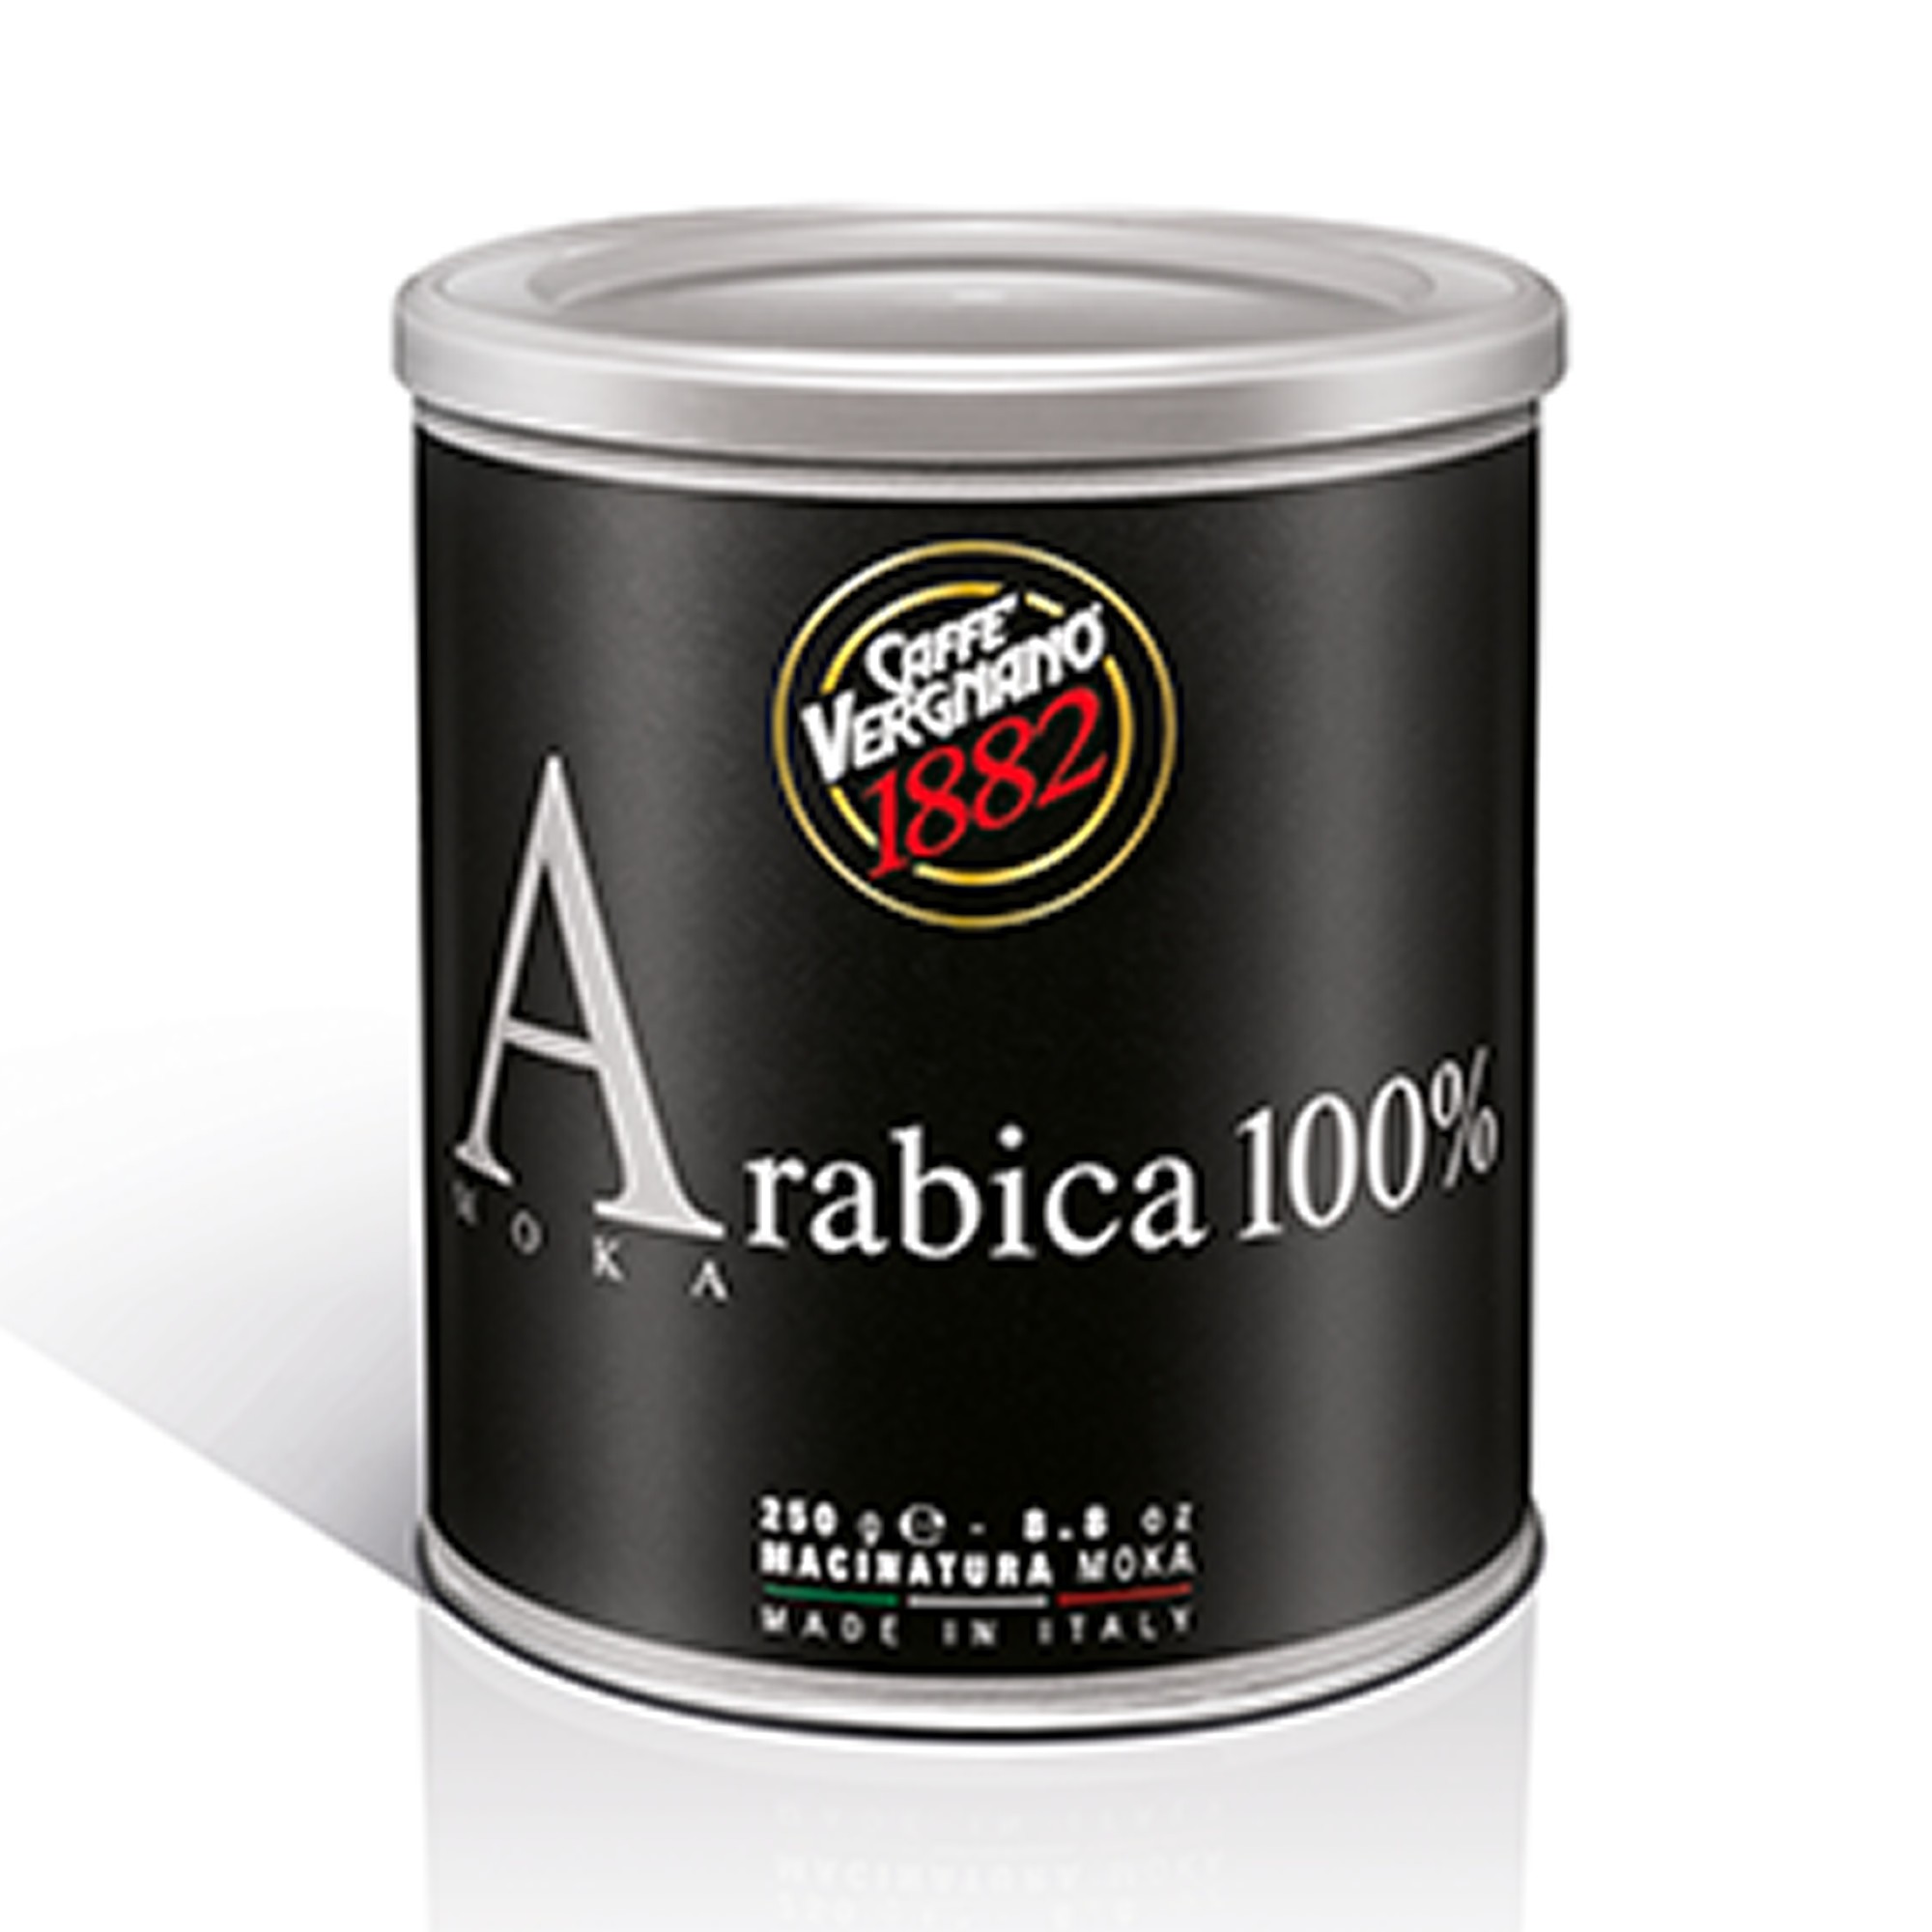 Caffe' Vergnano 1882 Arabica 100% Made In Italy Lattina Di Caffe' 250 Gr  Macinato Per Moka Intensita' 3 - Buonitaly